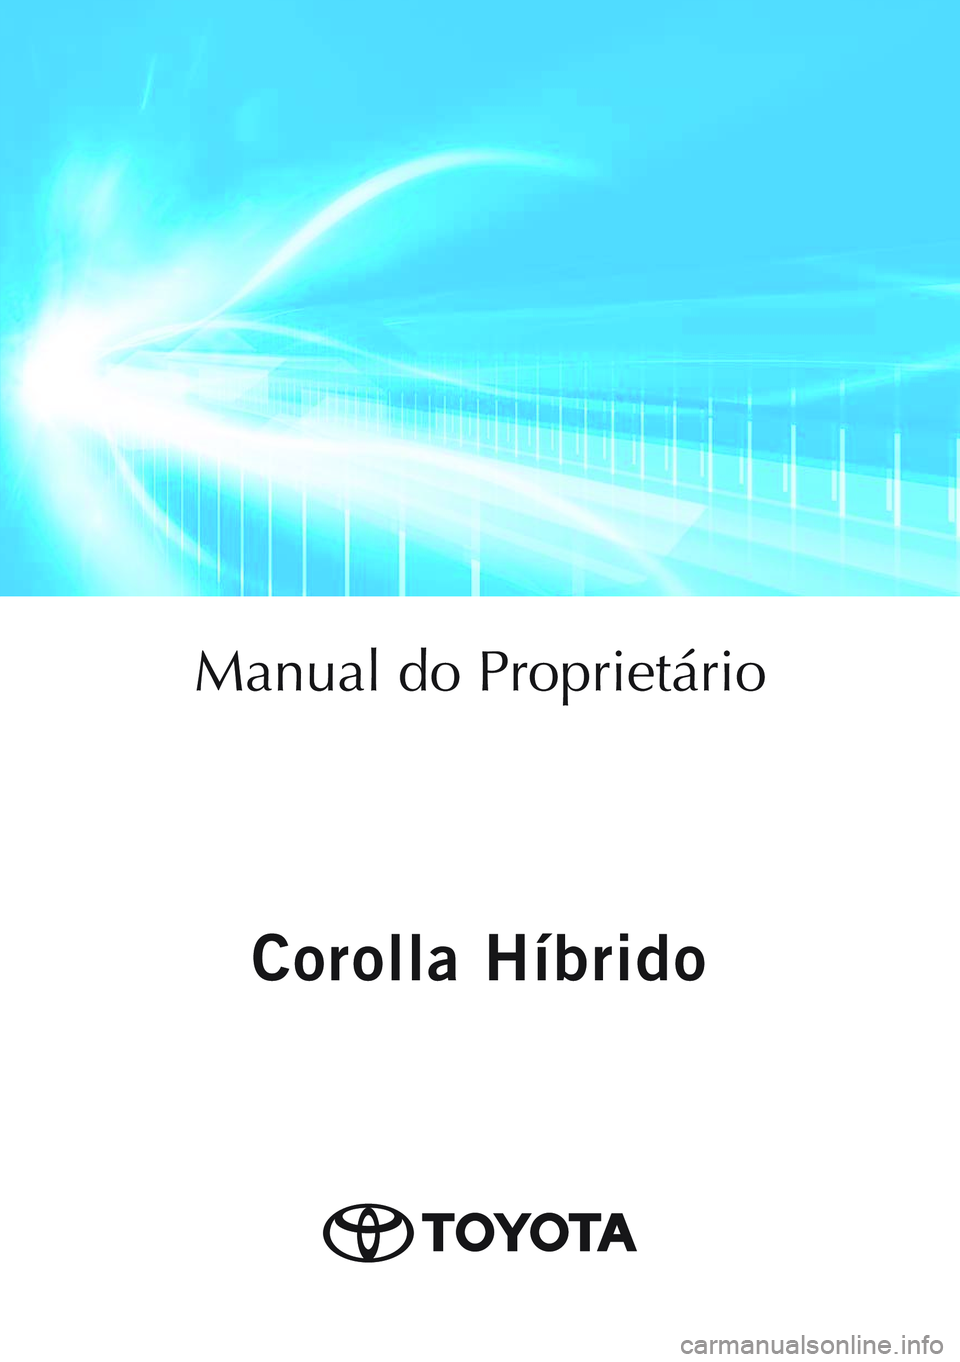 TOYOTA COROLLA HATCHBACK 2020  Manual de utilização (in Portuguese) Corolla Híbrido
Corolla Híbrido
Manual do Proprietário
Mod. OM12P55PT
Public. N.º OM12P55E
ORGAL-PORTO 